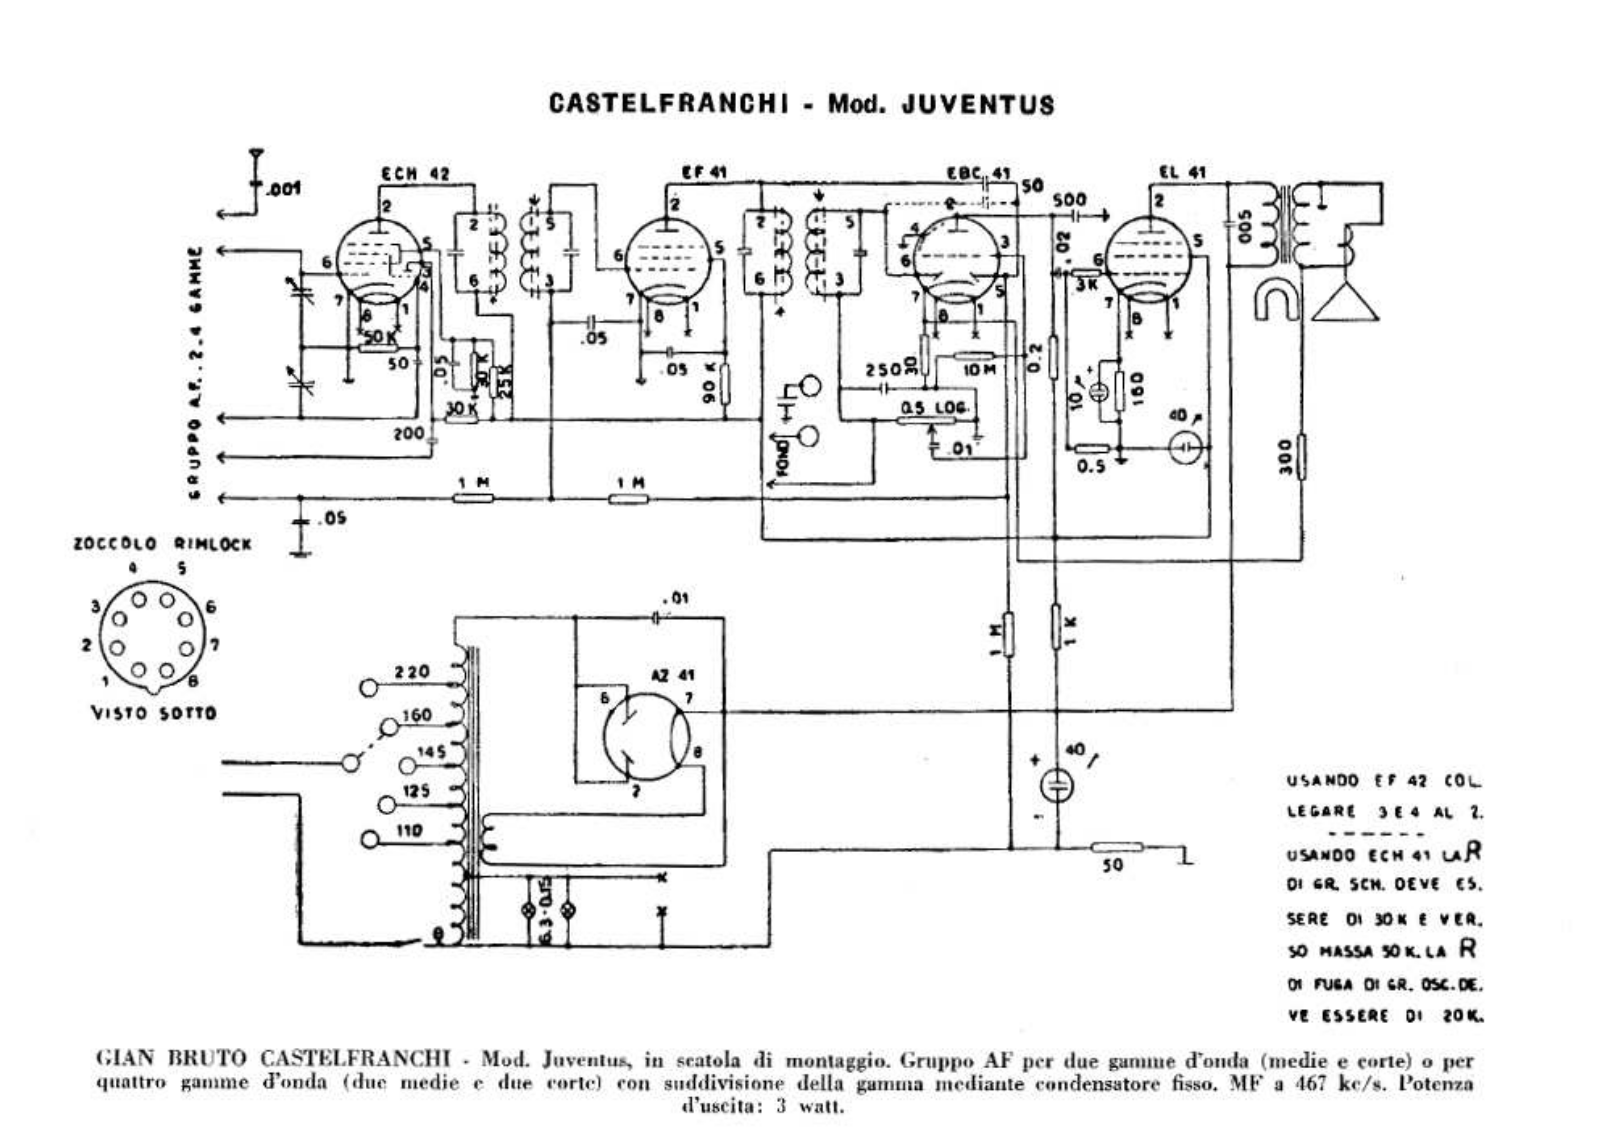 Castelfranchi juventus schematic